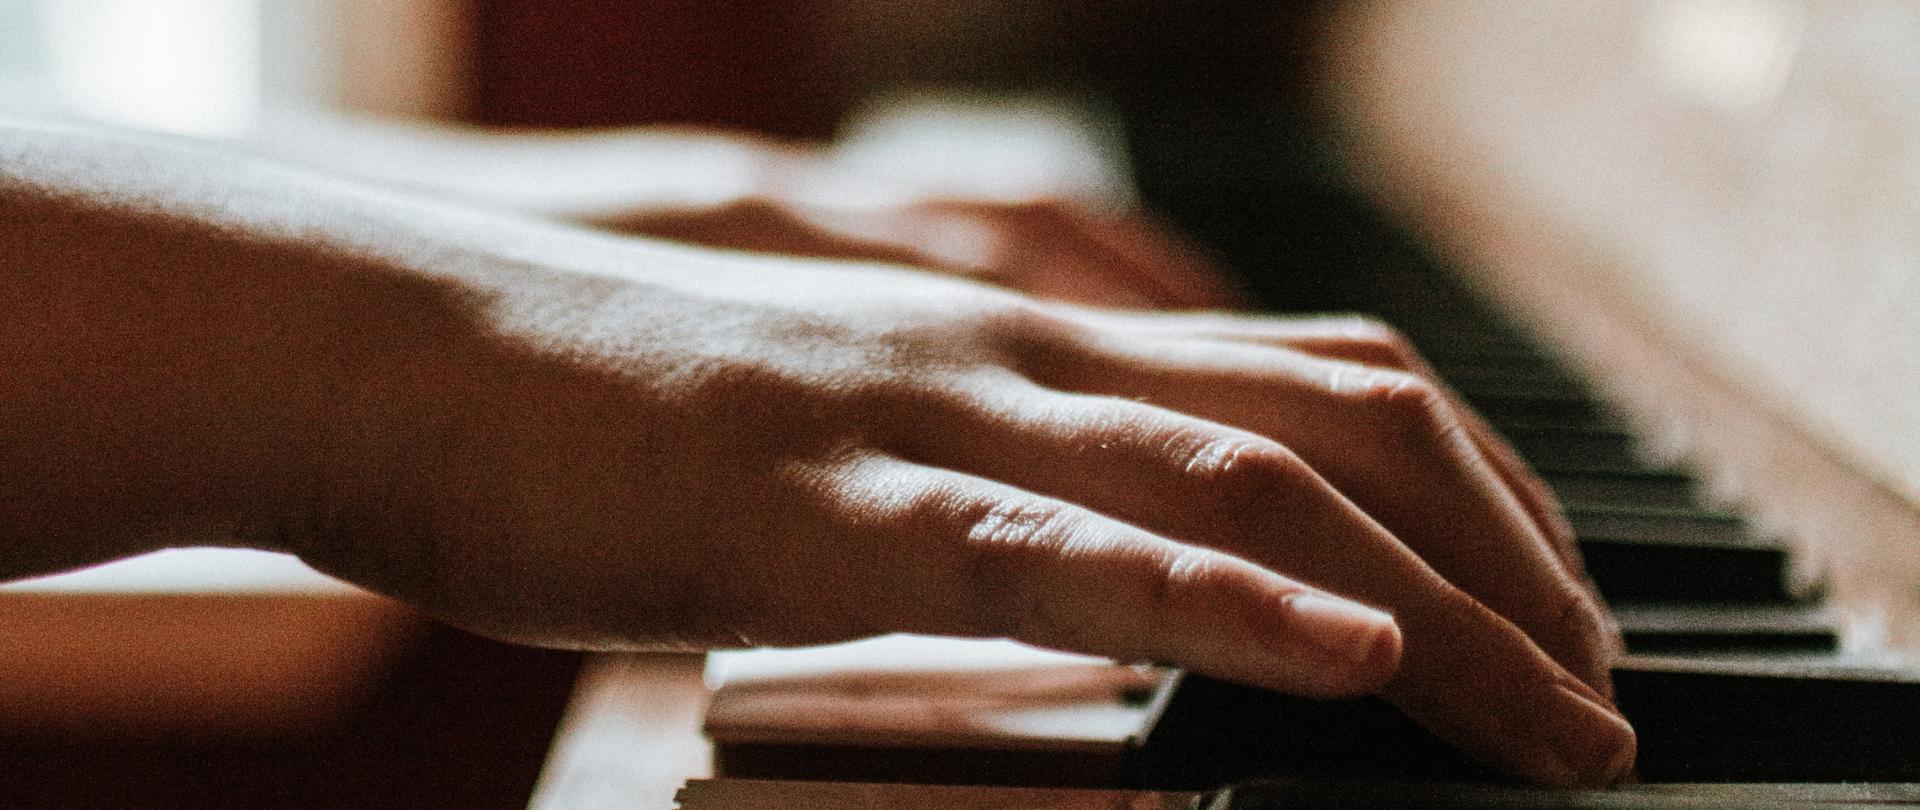 zdjęcie przedstawiające dłonie na klawiaturze fortepianu